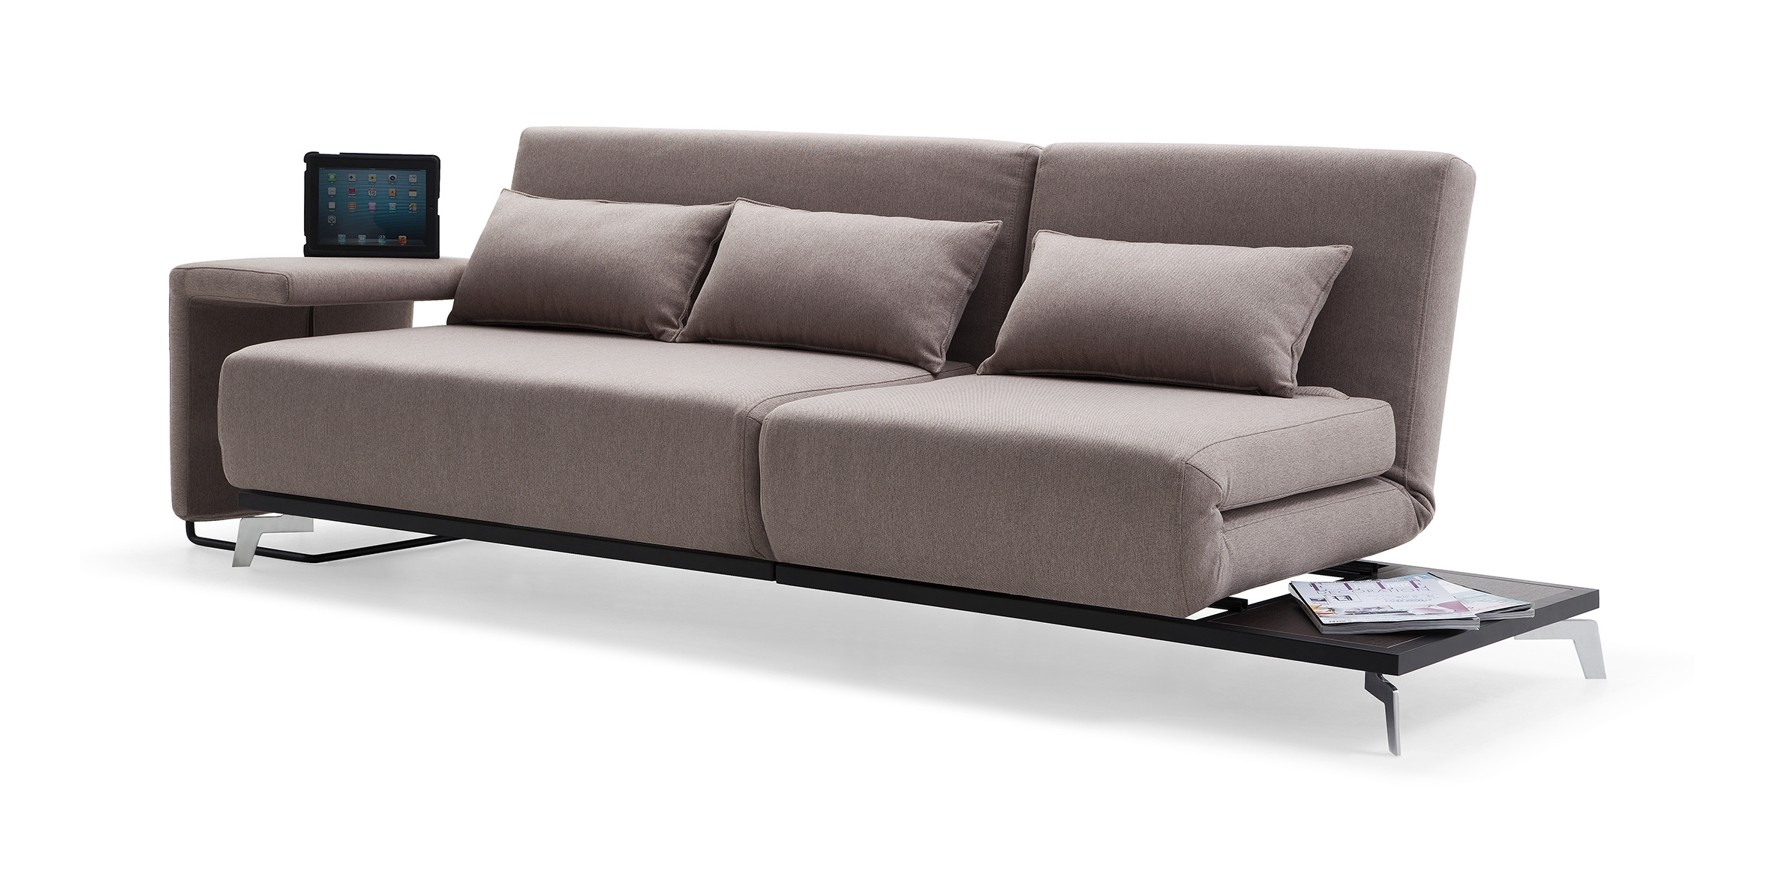 modern-furniture-bed-design